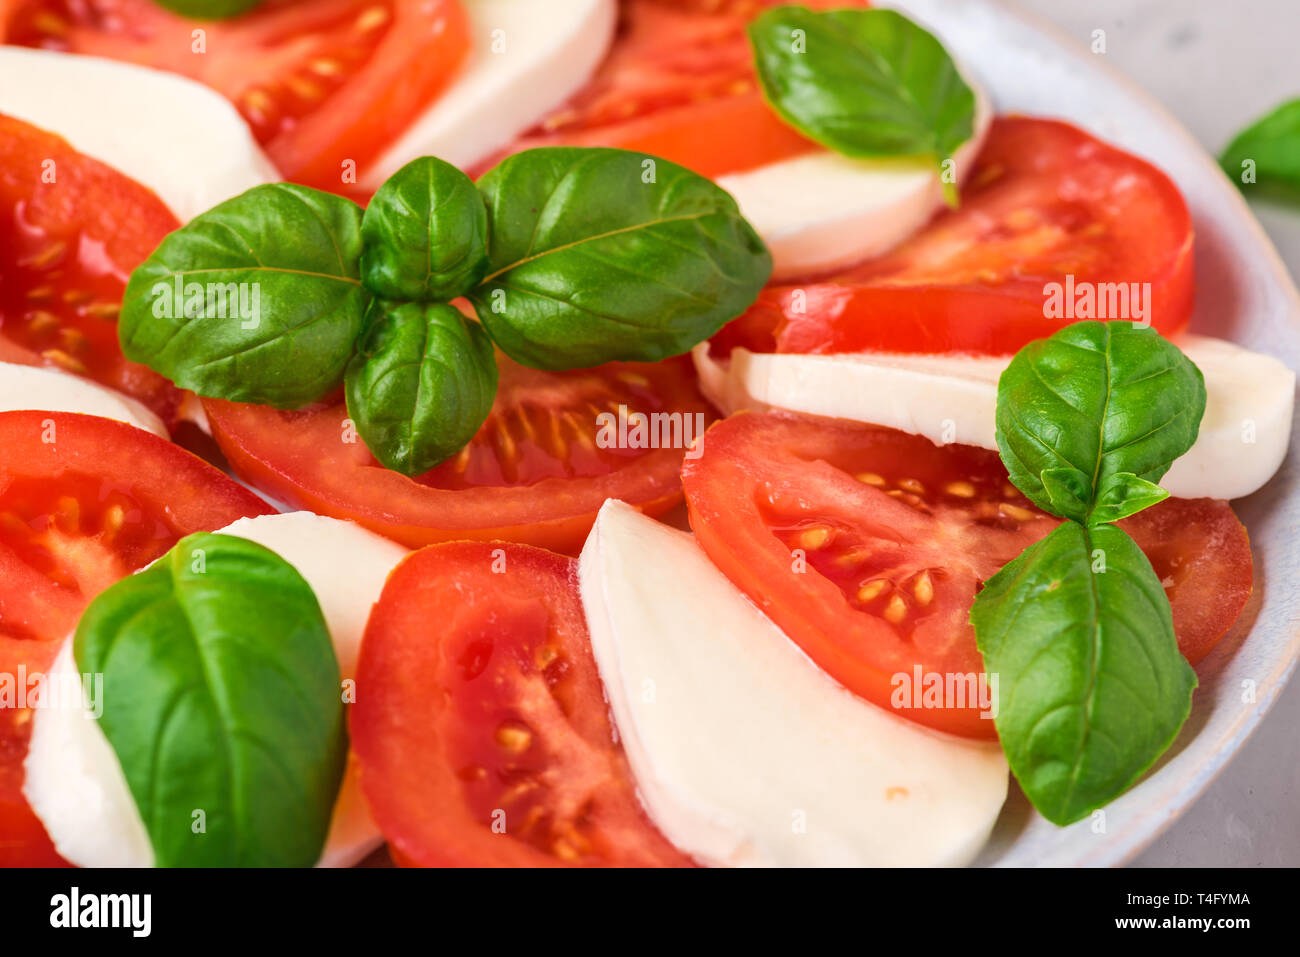 Italiano insalata caprese con pomodori a fette, formaggio mozzarella, basilico, olio d'oliva in una piastra sul cemento grigio Sfondo. close up Foto Stock